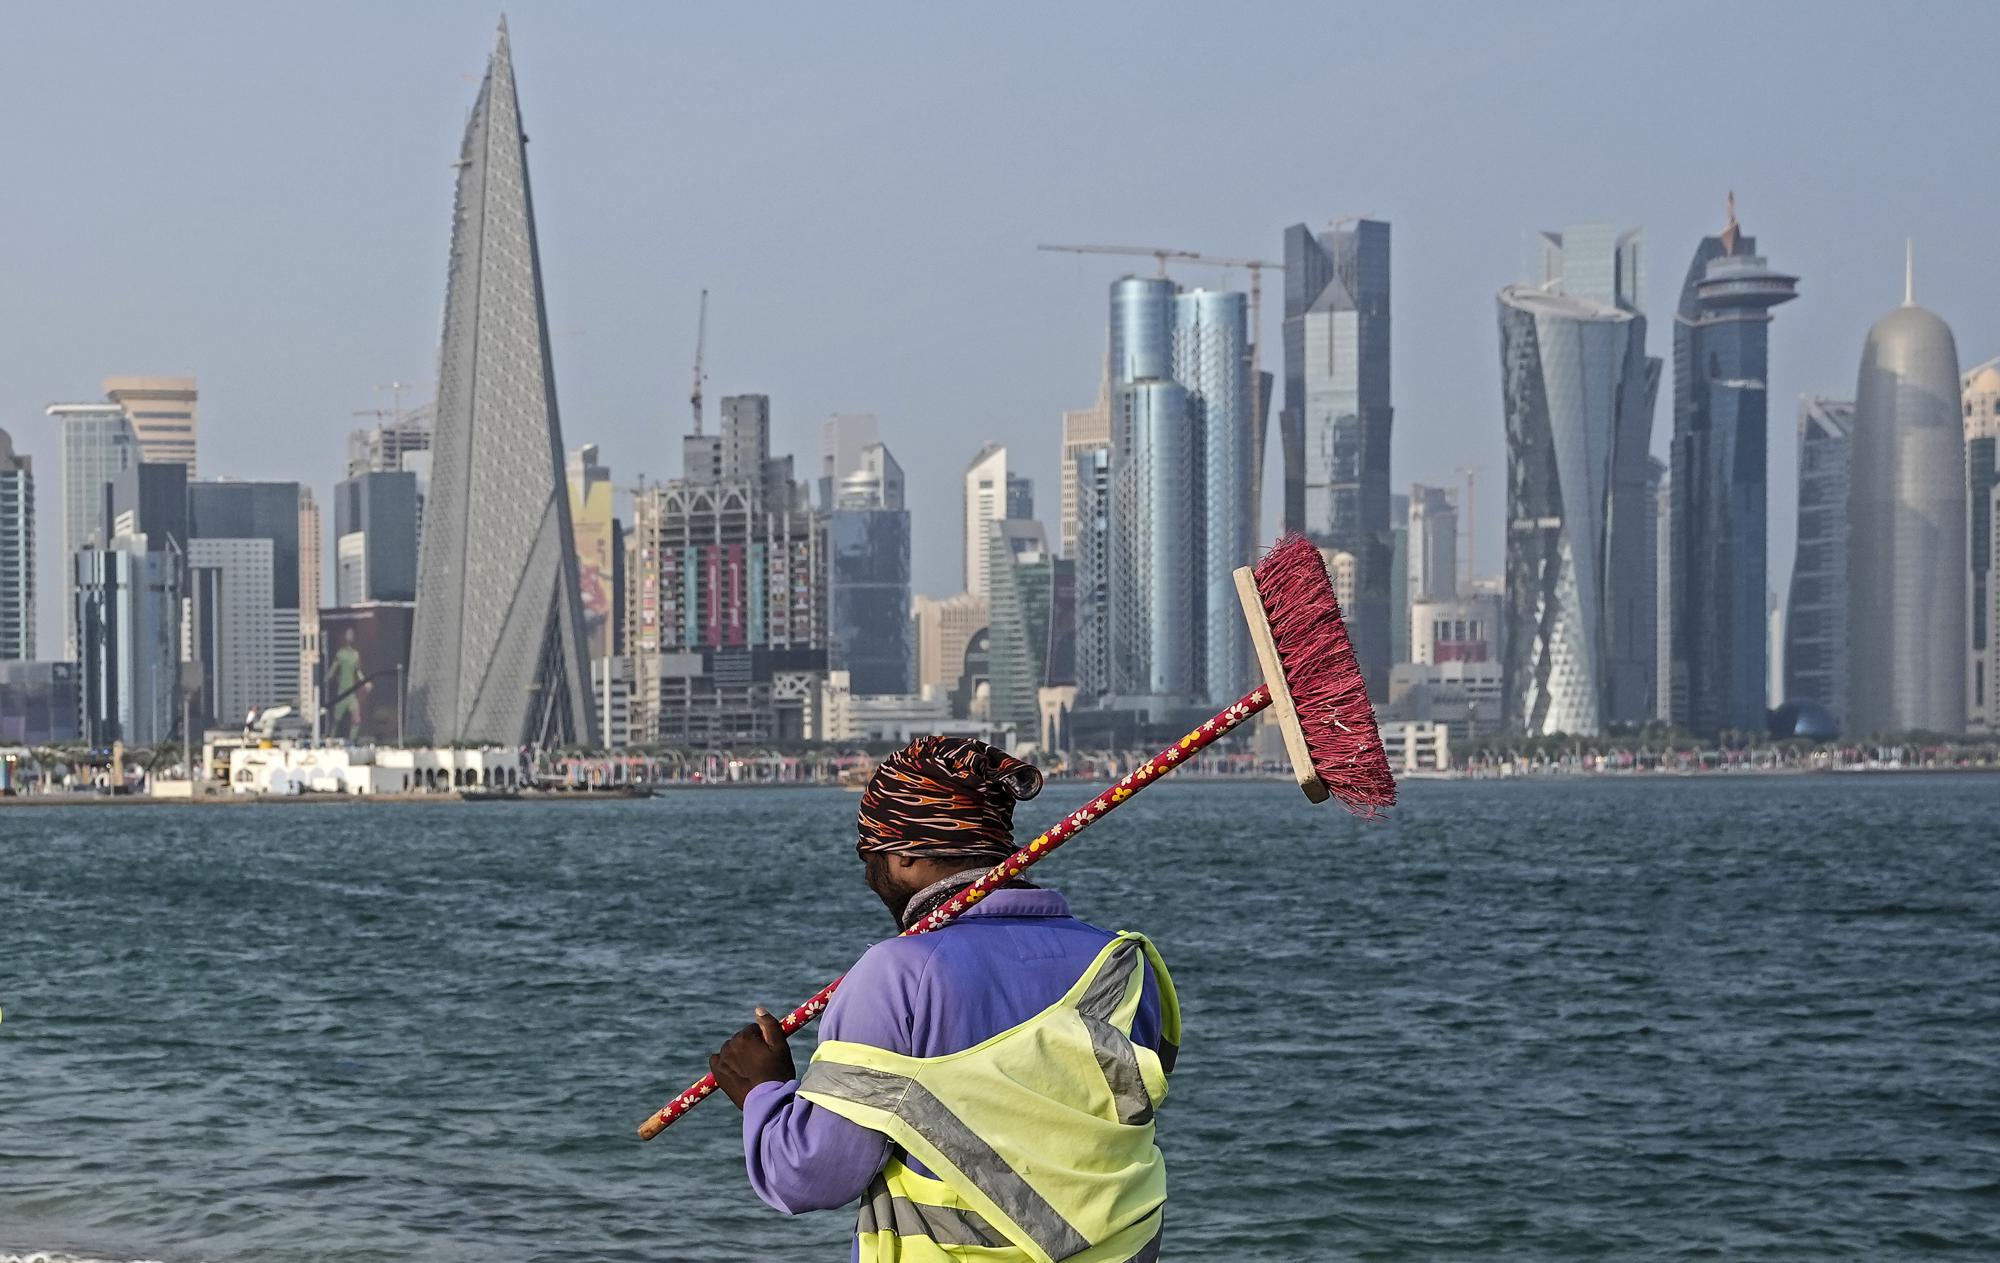 Du lịch Qatar mùa World Cup 2022: Những điểm đến không thể bỏ lỡ - Ảnh 11.